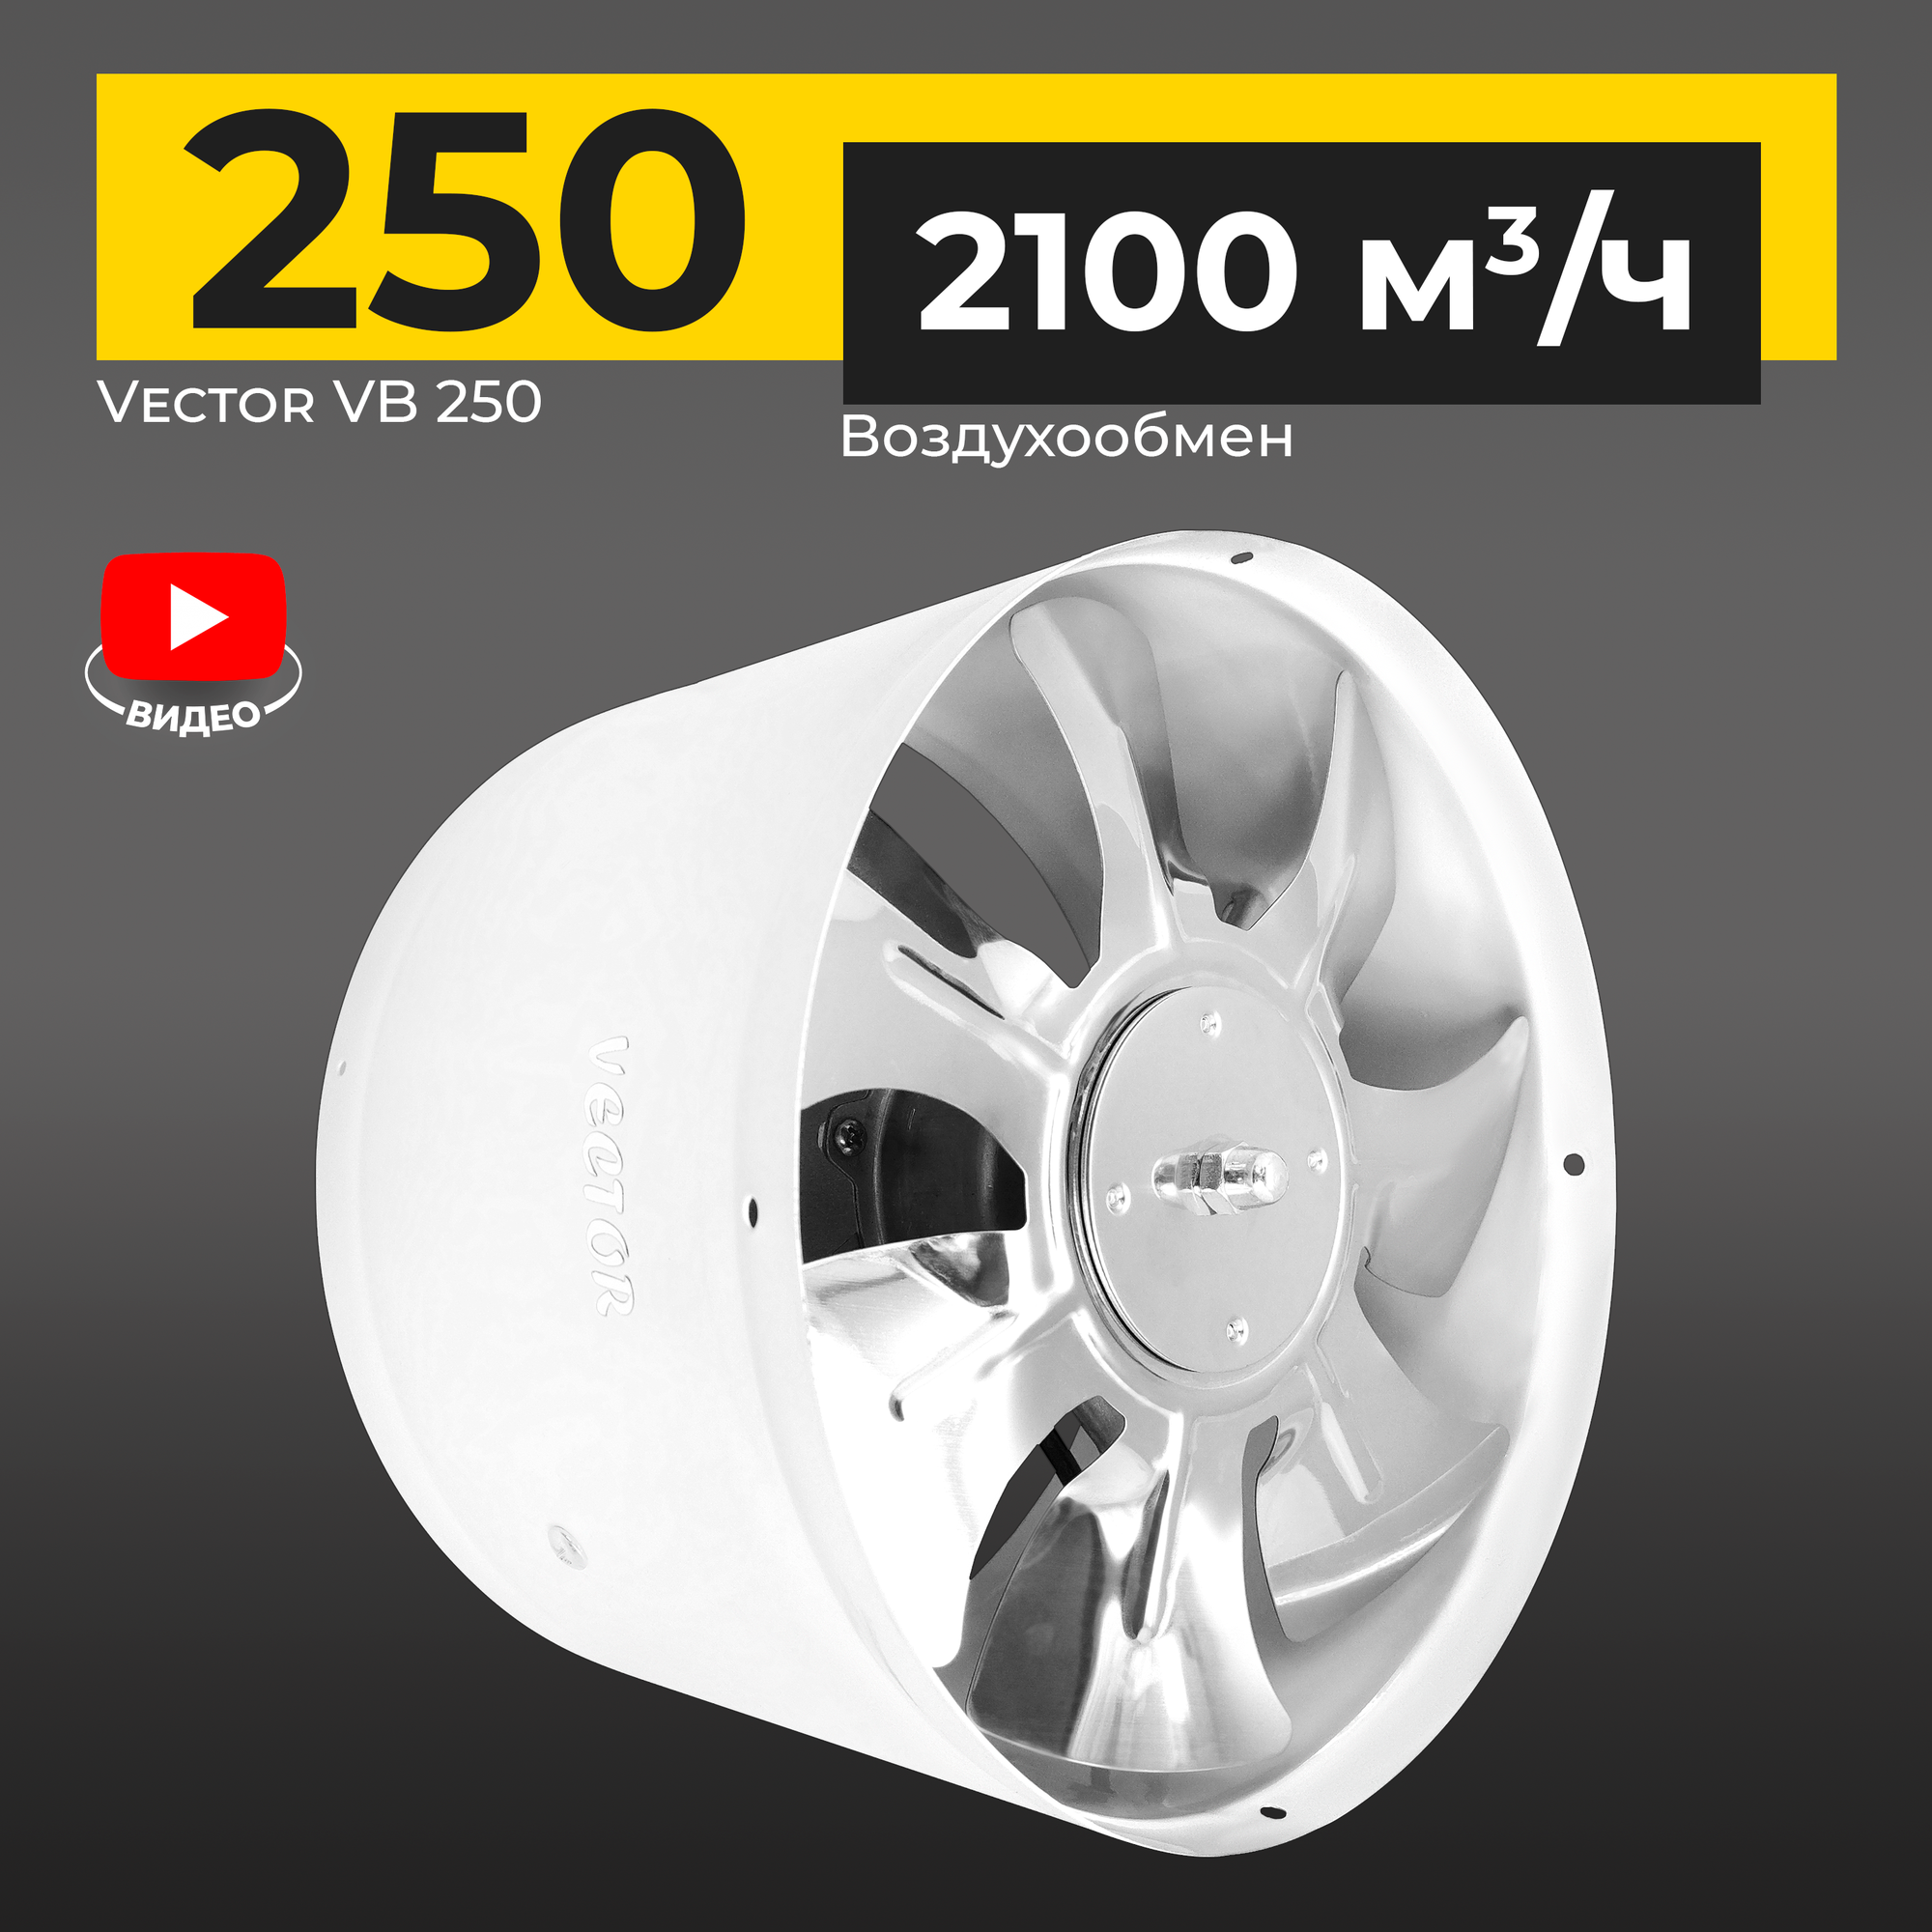 Вентилятор канальный Vector VB 250, воздухообмен 2100м3/ч IP44 100Вт, белый